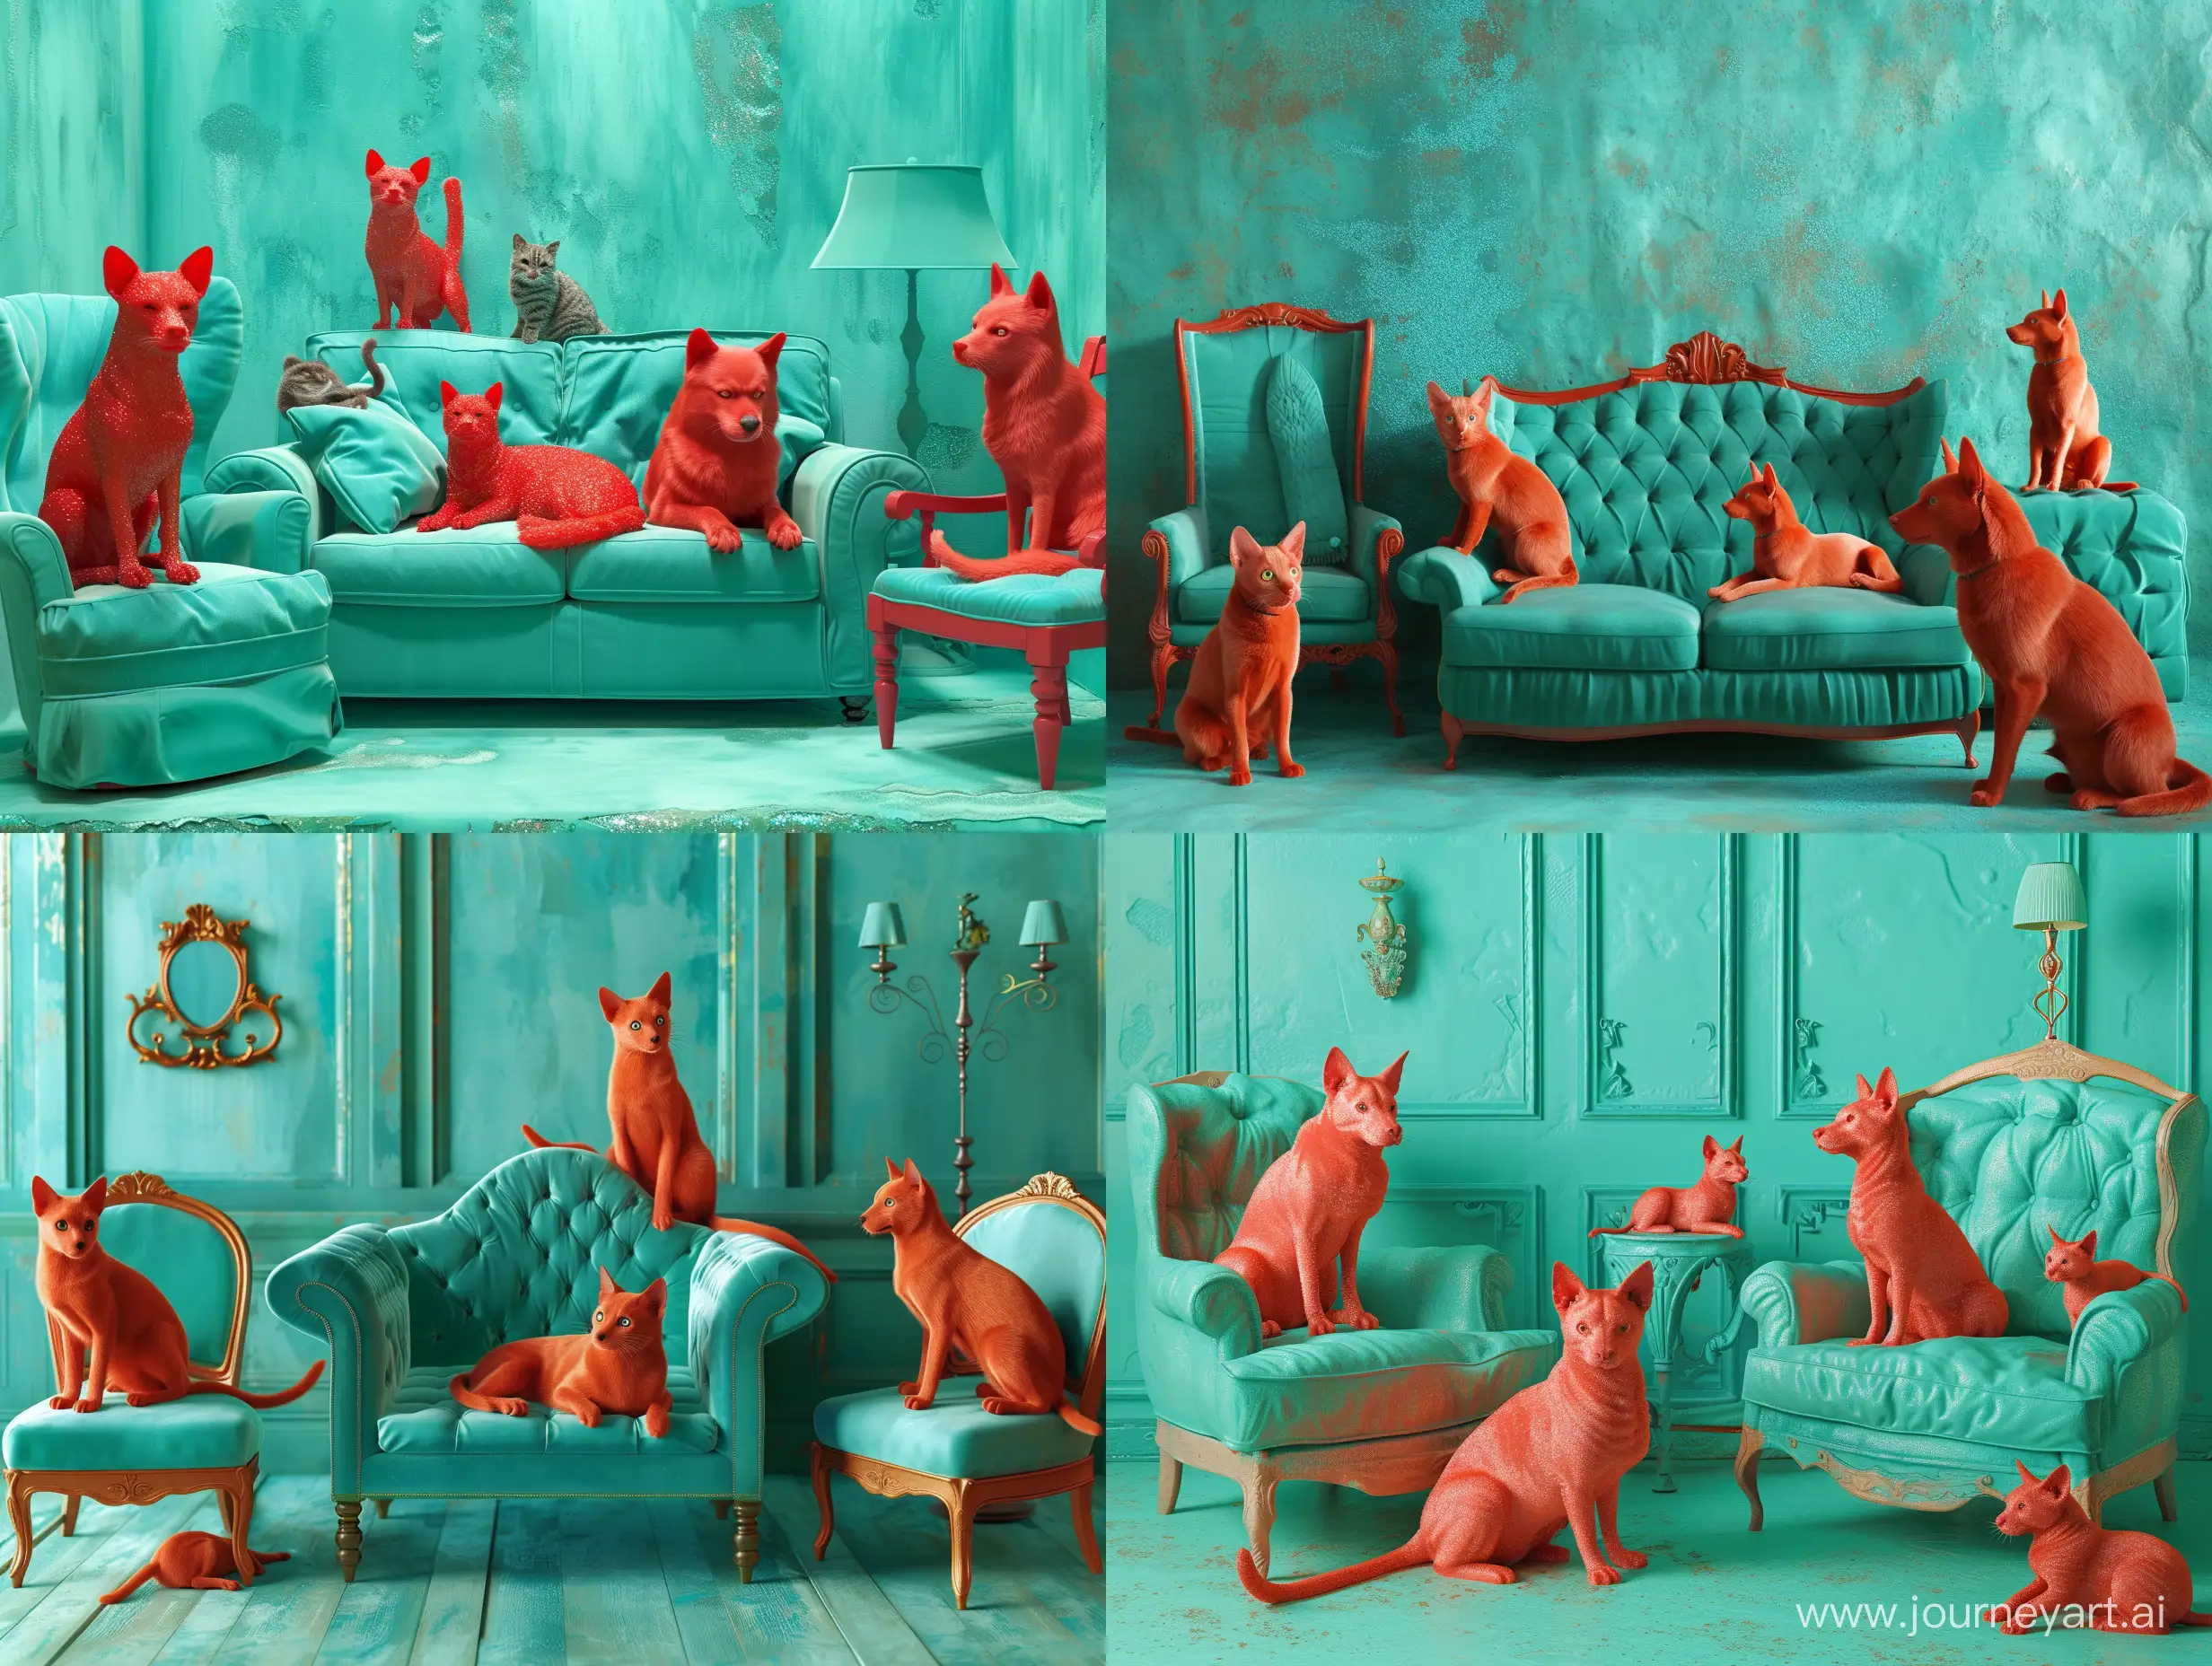 милые рыжие собаки и кошки сидят на мягком диване и кресле в комнате бирюзового цвета гипер реалистично, красивый  lumen, глиттер, профессиональное фото, 3d, реалистично, 128k,высокое разрешение, высокая детализация,cgi, гиперреализм,f/16, 1/300s.  